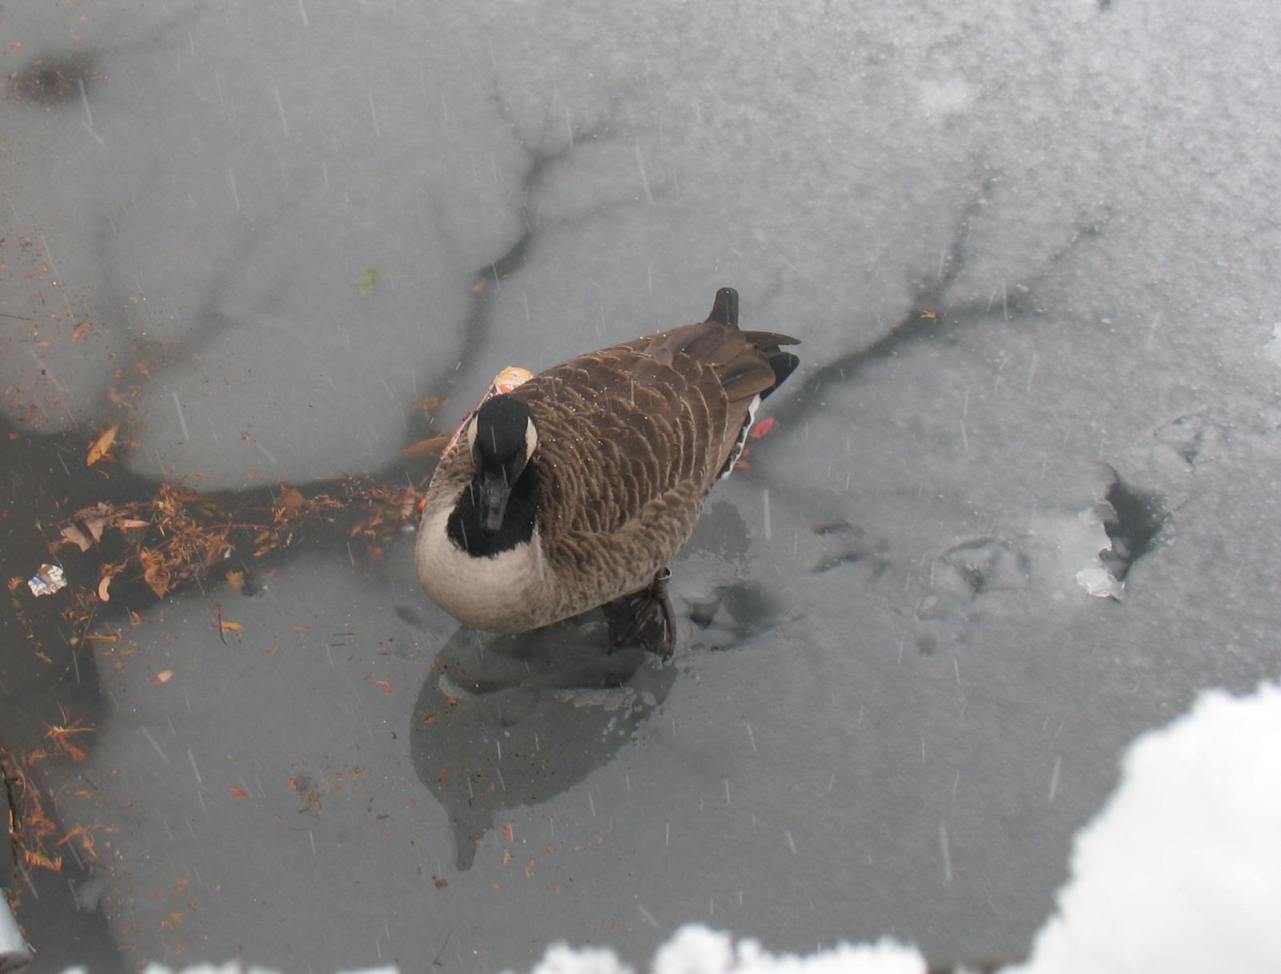 Canada goose walking on pond slush